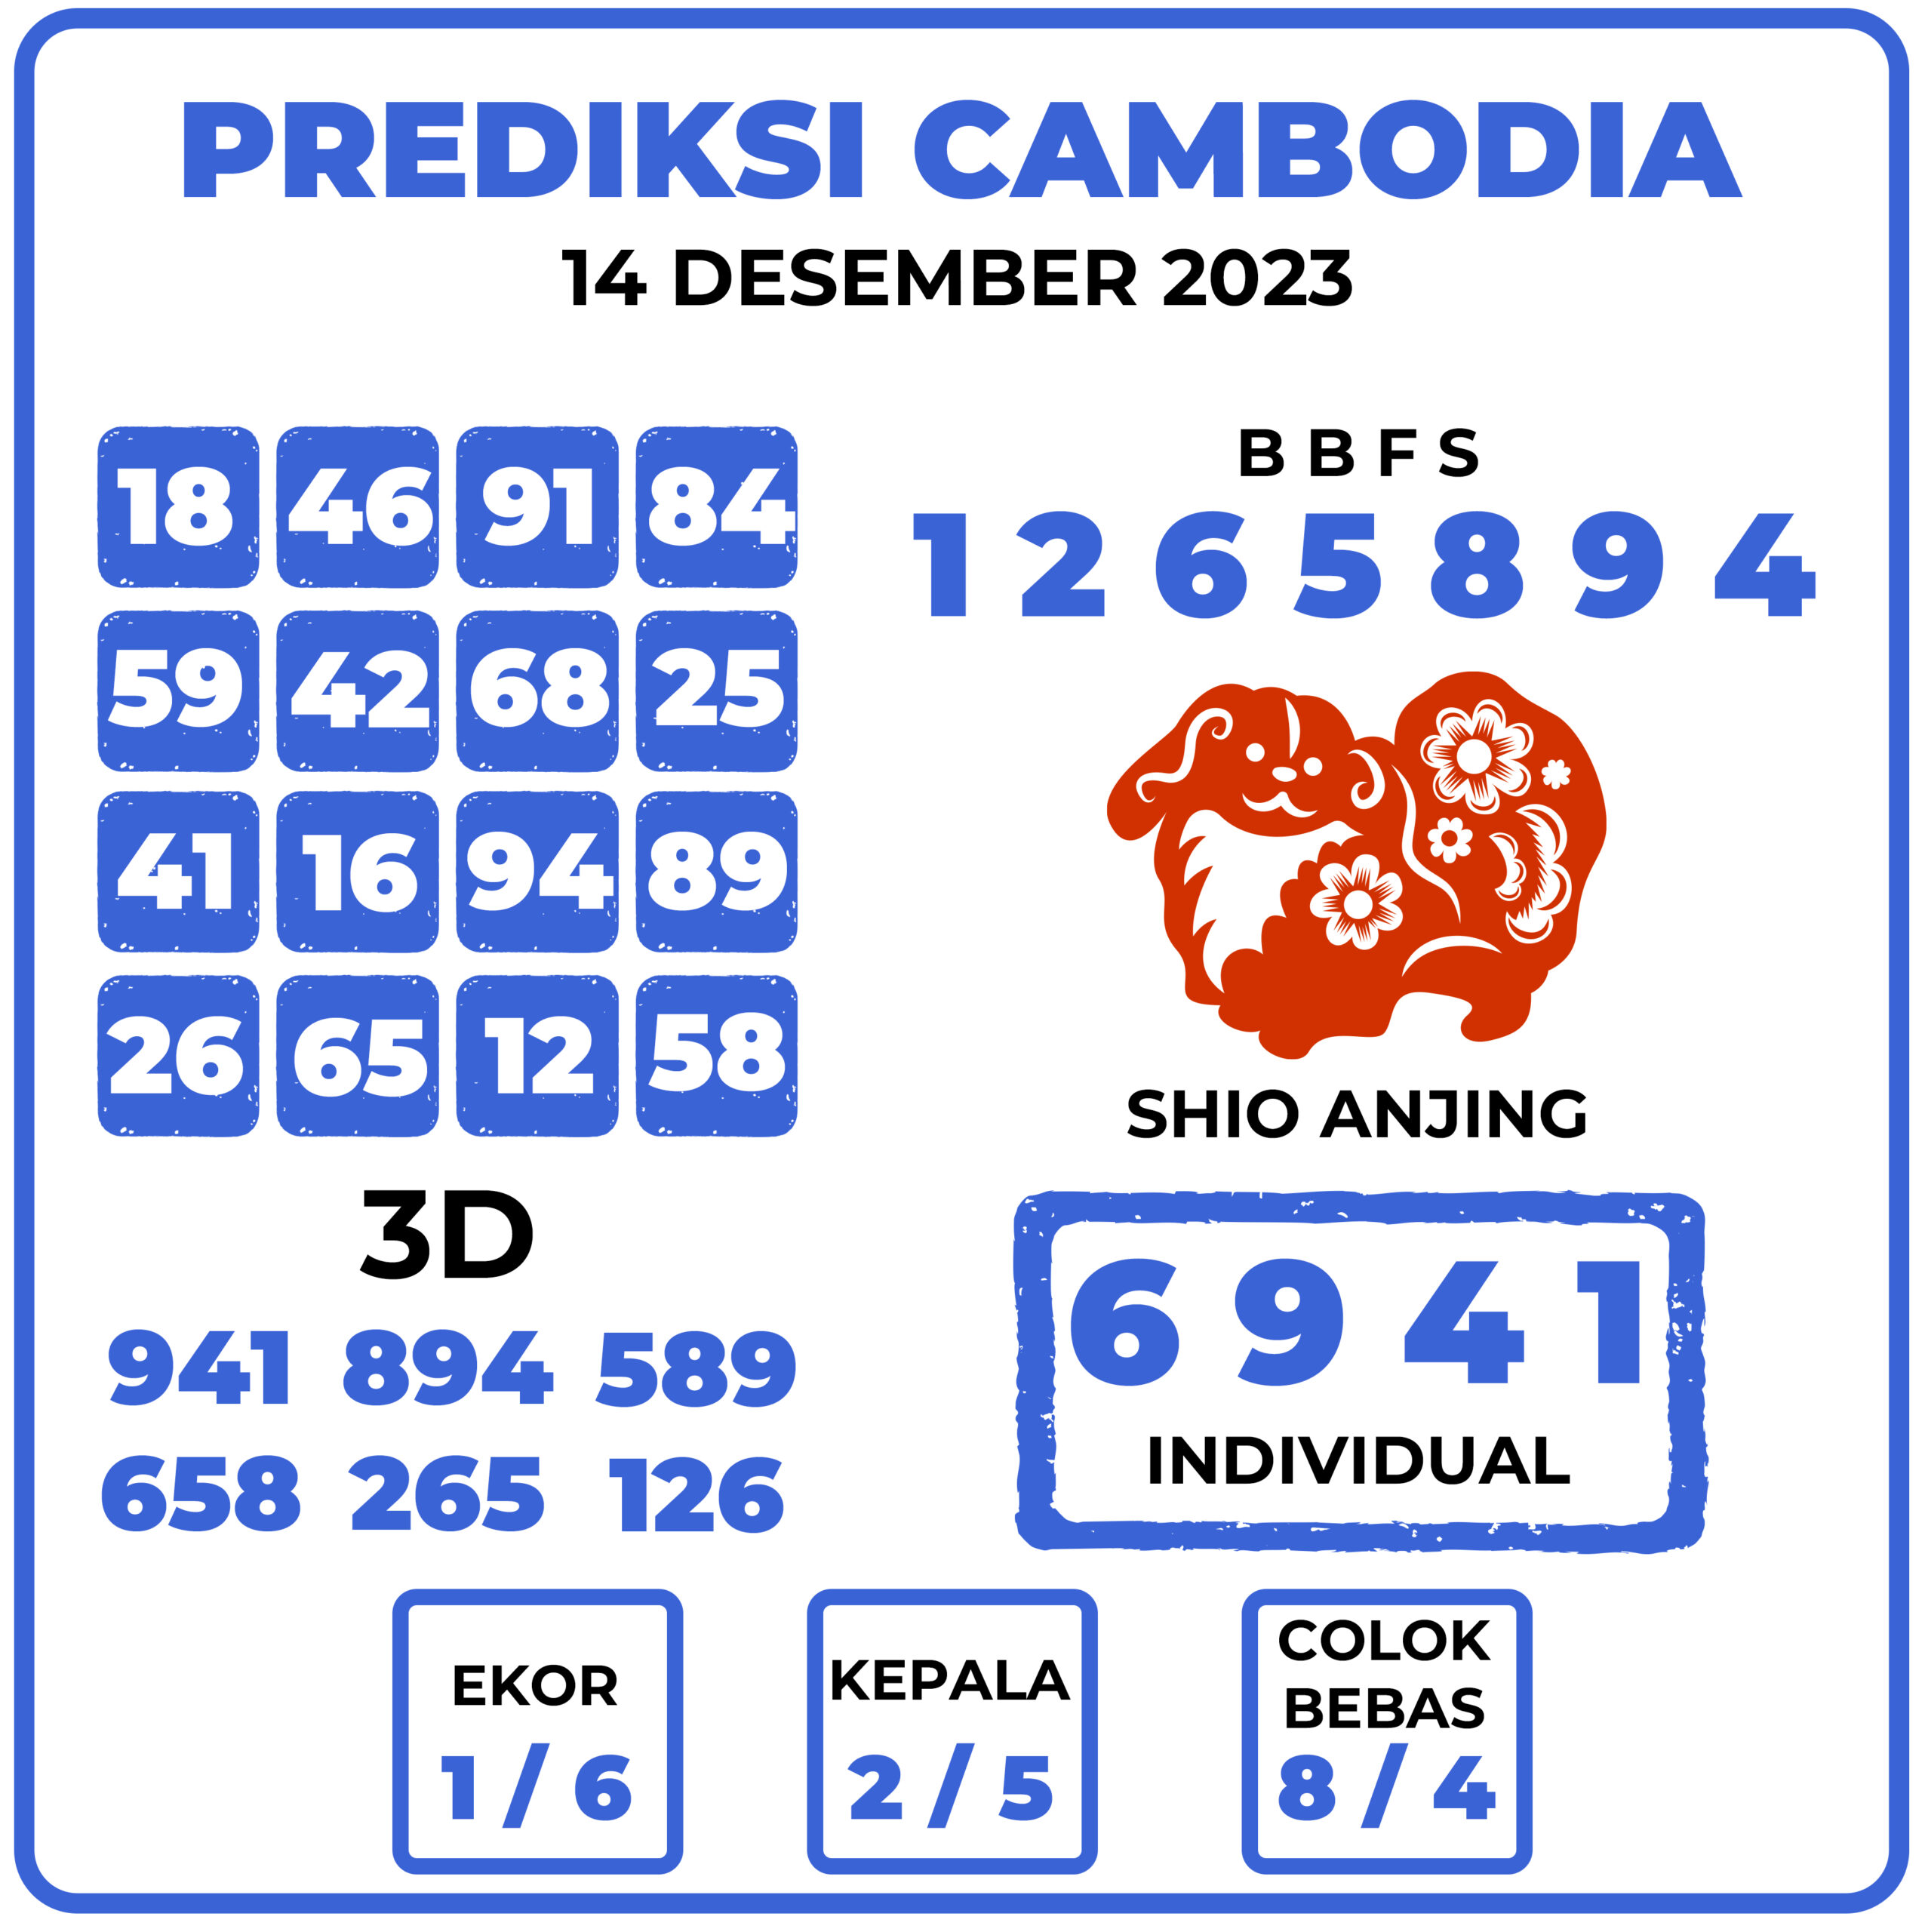 Prediksi Togel Cambodia 14 Desember 2023